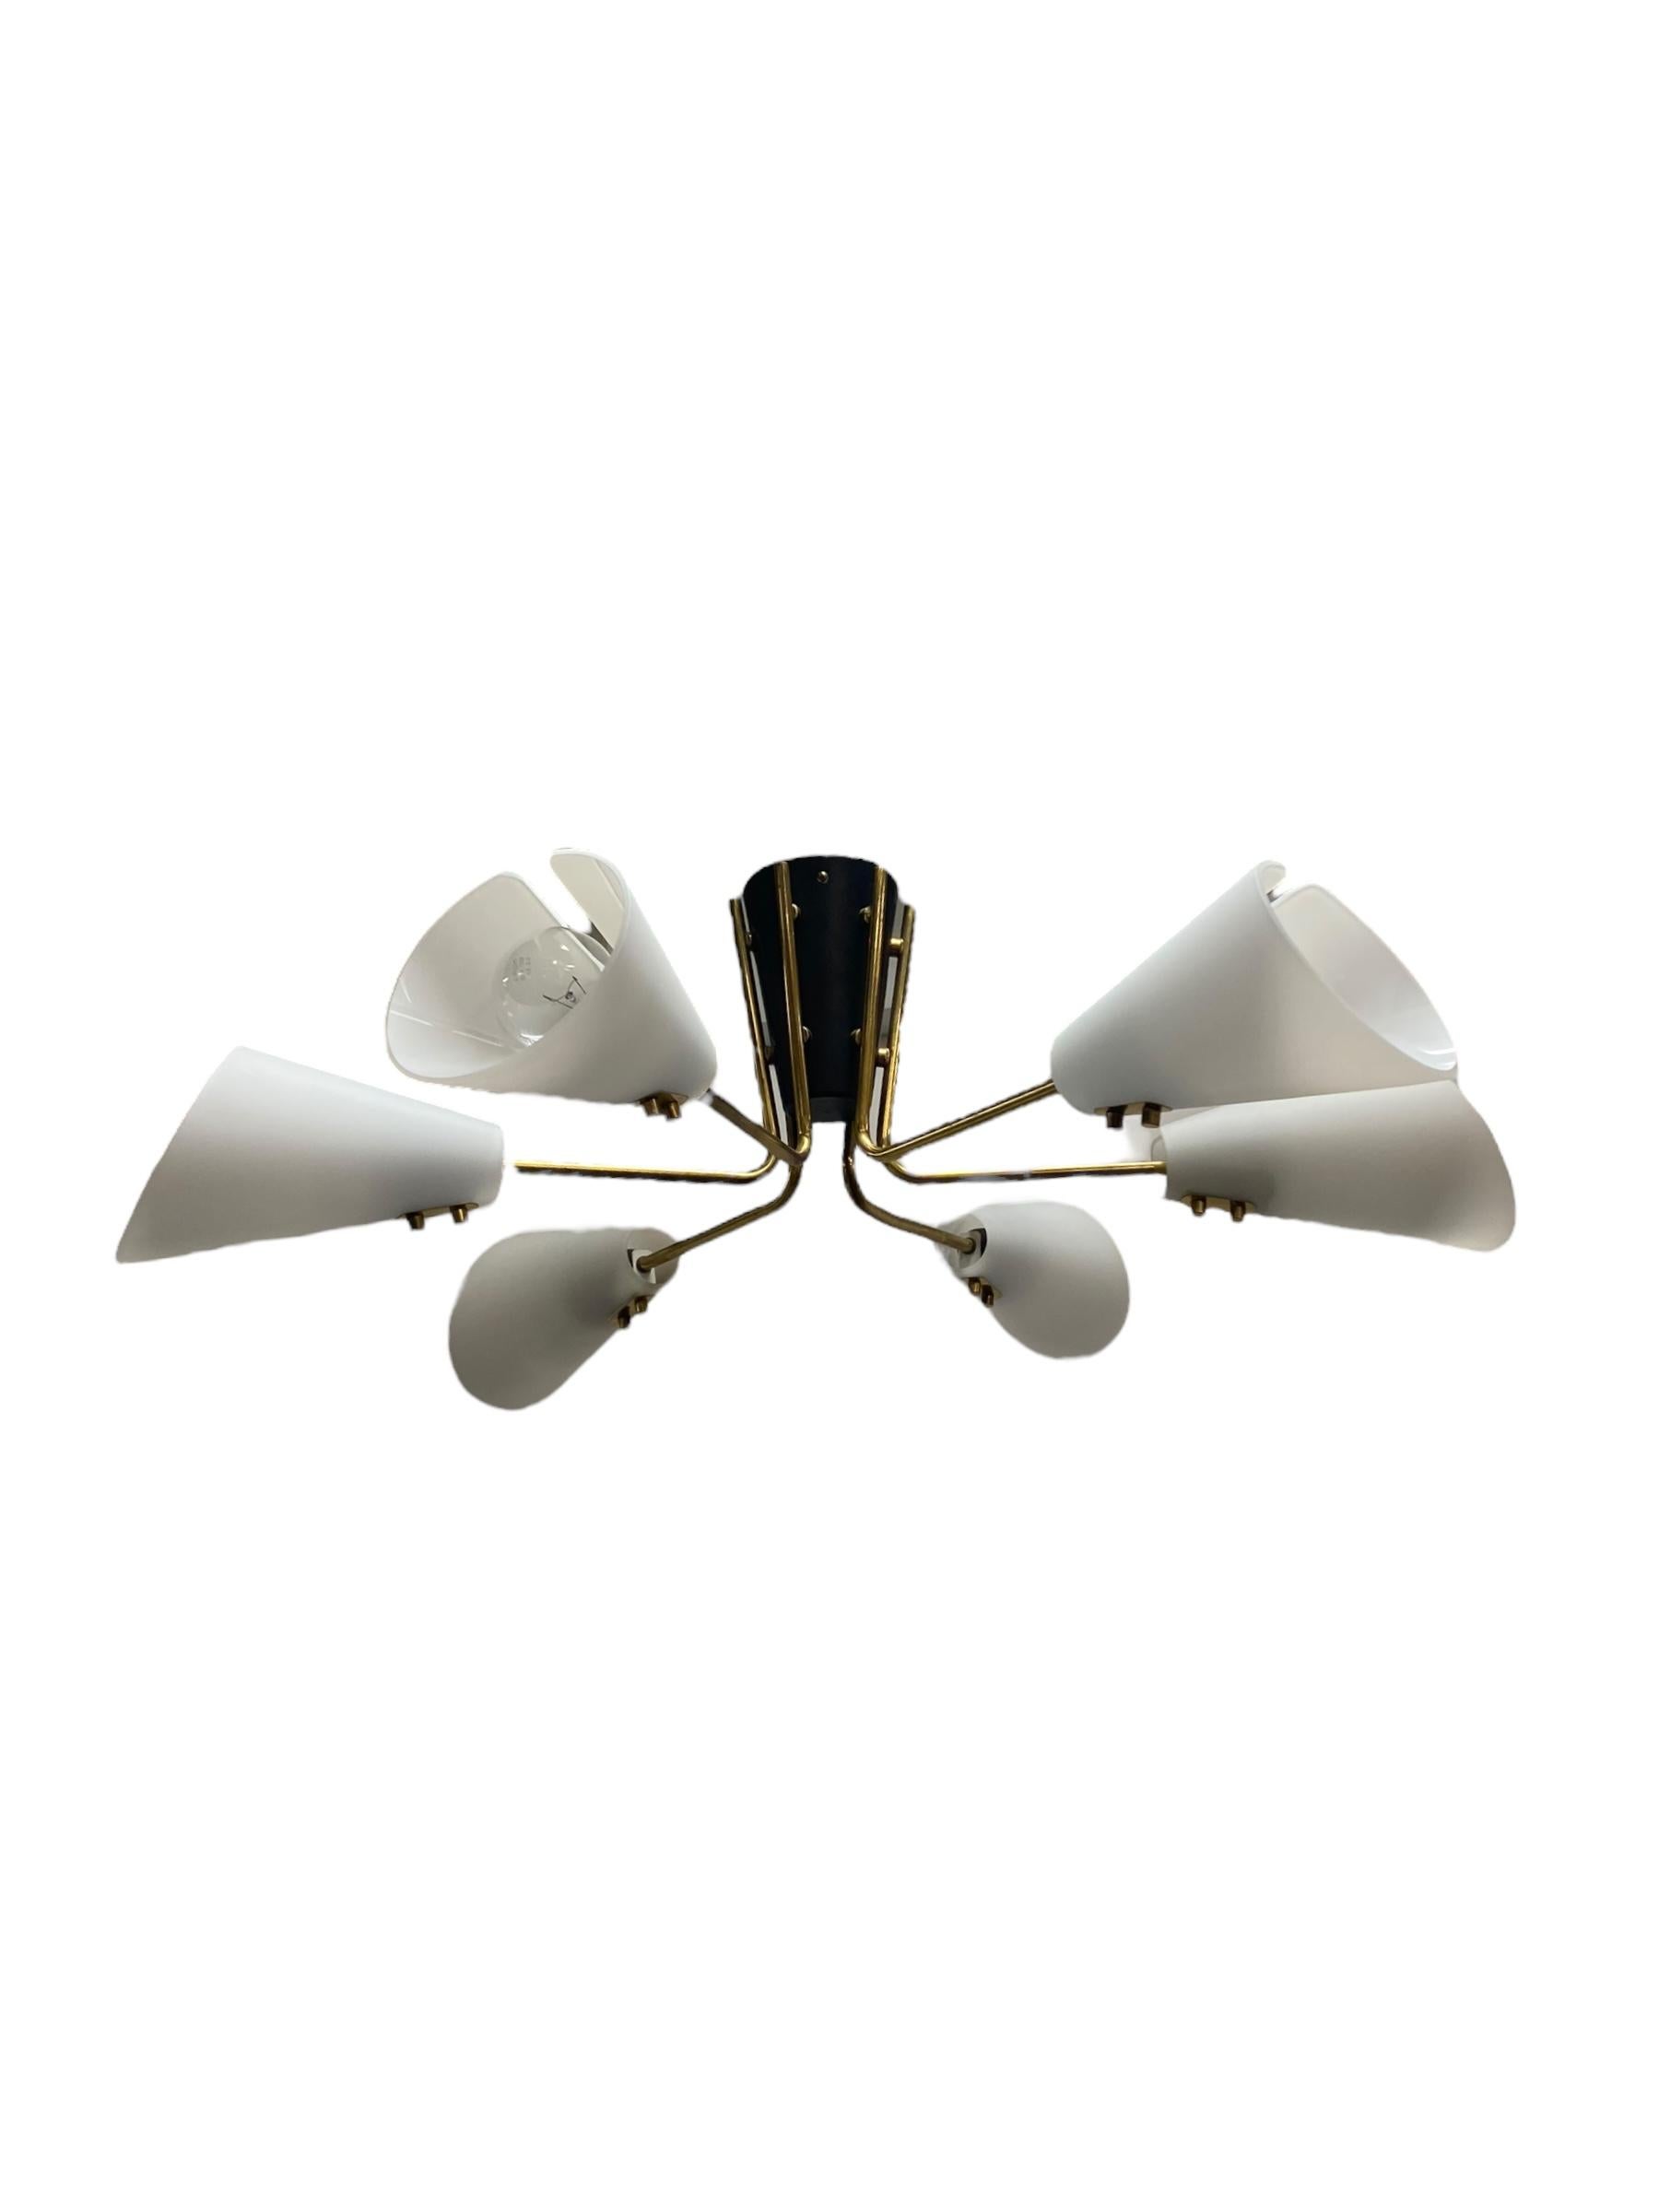 Eine brillante Lampe von Itsu aus den 1950er Jahren. Dieser Lampentyp passt gut in jedes Design-Interieur. Die Schwarz-Weiß-Kombination mit den goldenen Messingstielen ist schlicht, elegant, minimalistisch und funktional. Ein edler Vintage-Look, der